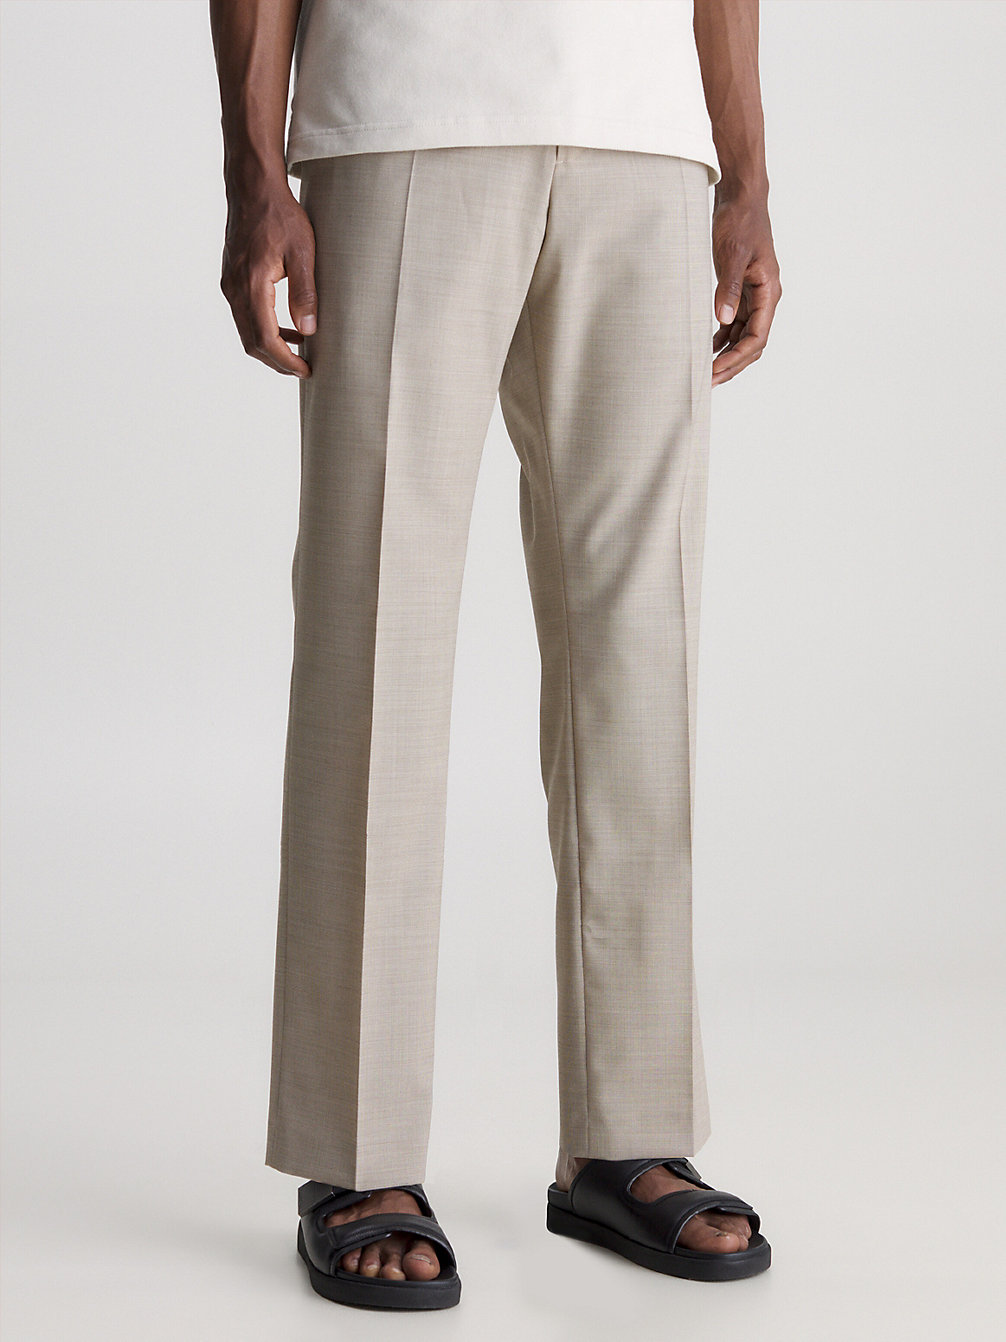 Pantaloni In Misto Lana Bicolor > TRAVERTINE > undefined uomo > Calvin Klein